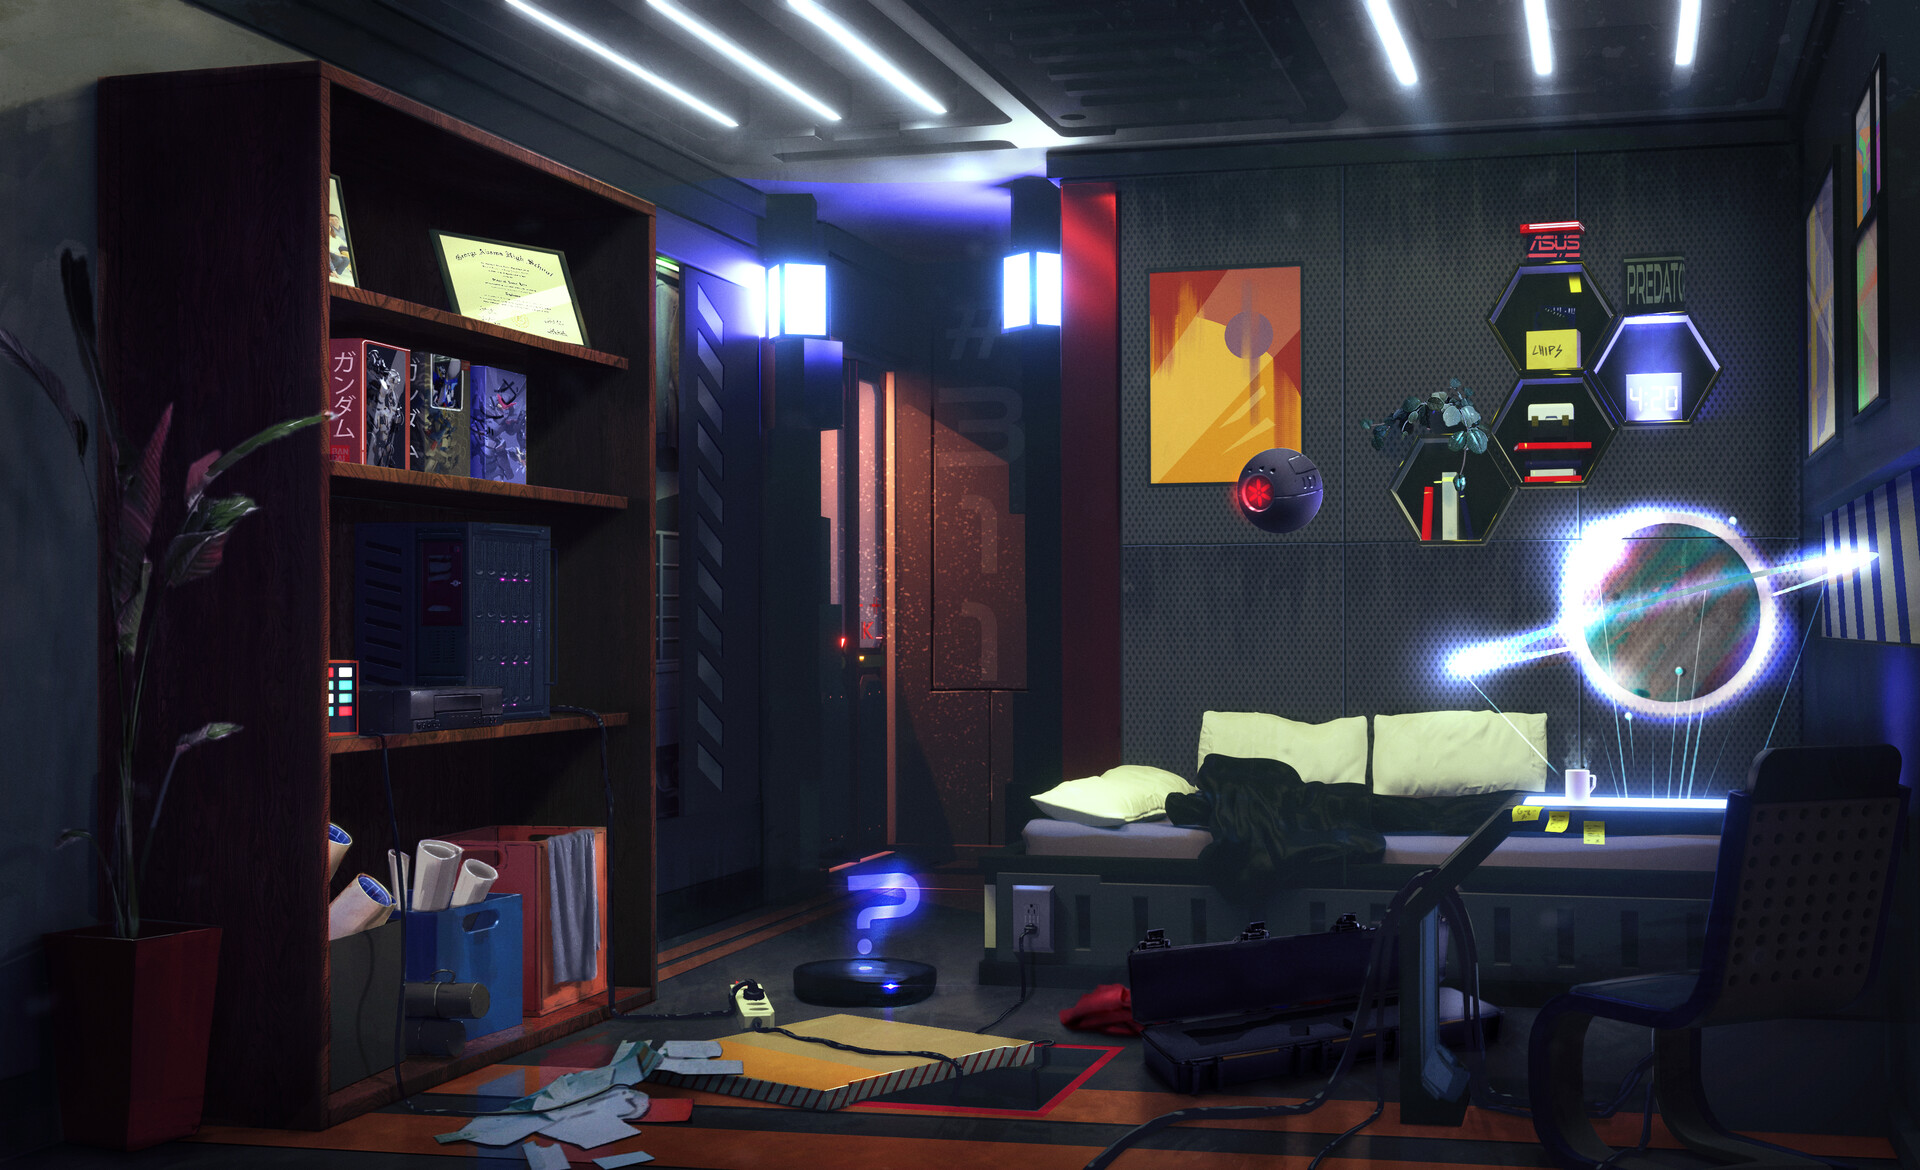 artstation - sci-fi / cyberpunk room design., veniamin ponomarev